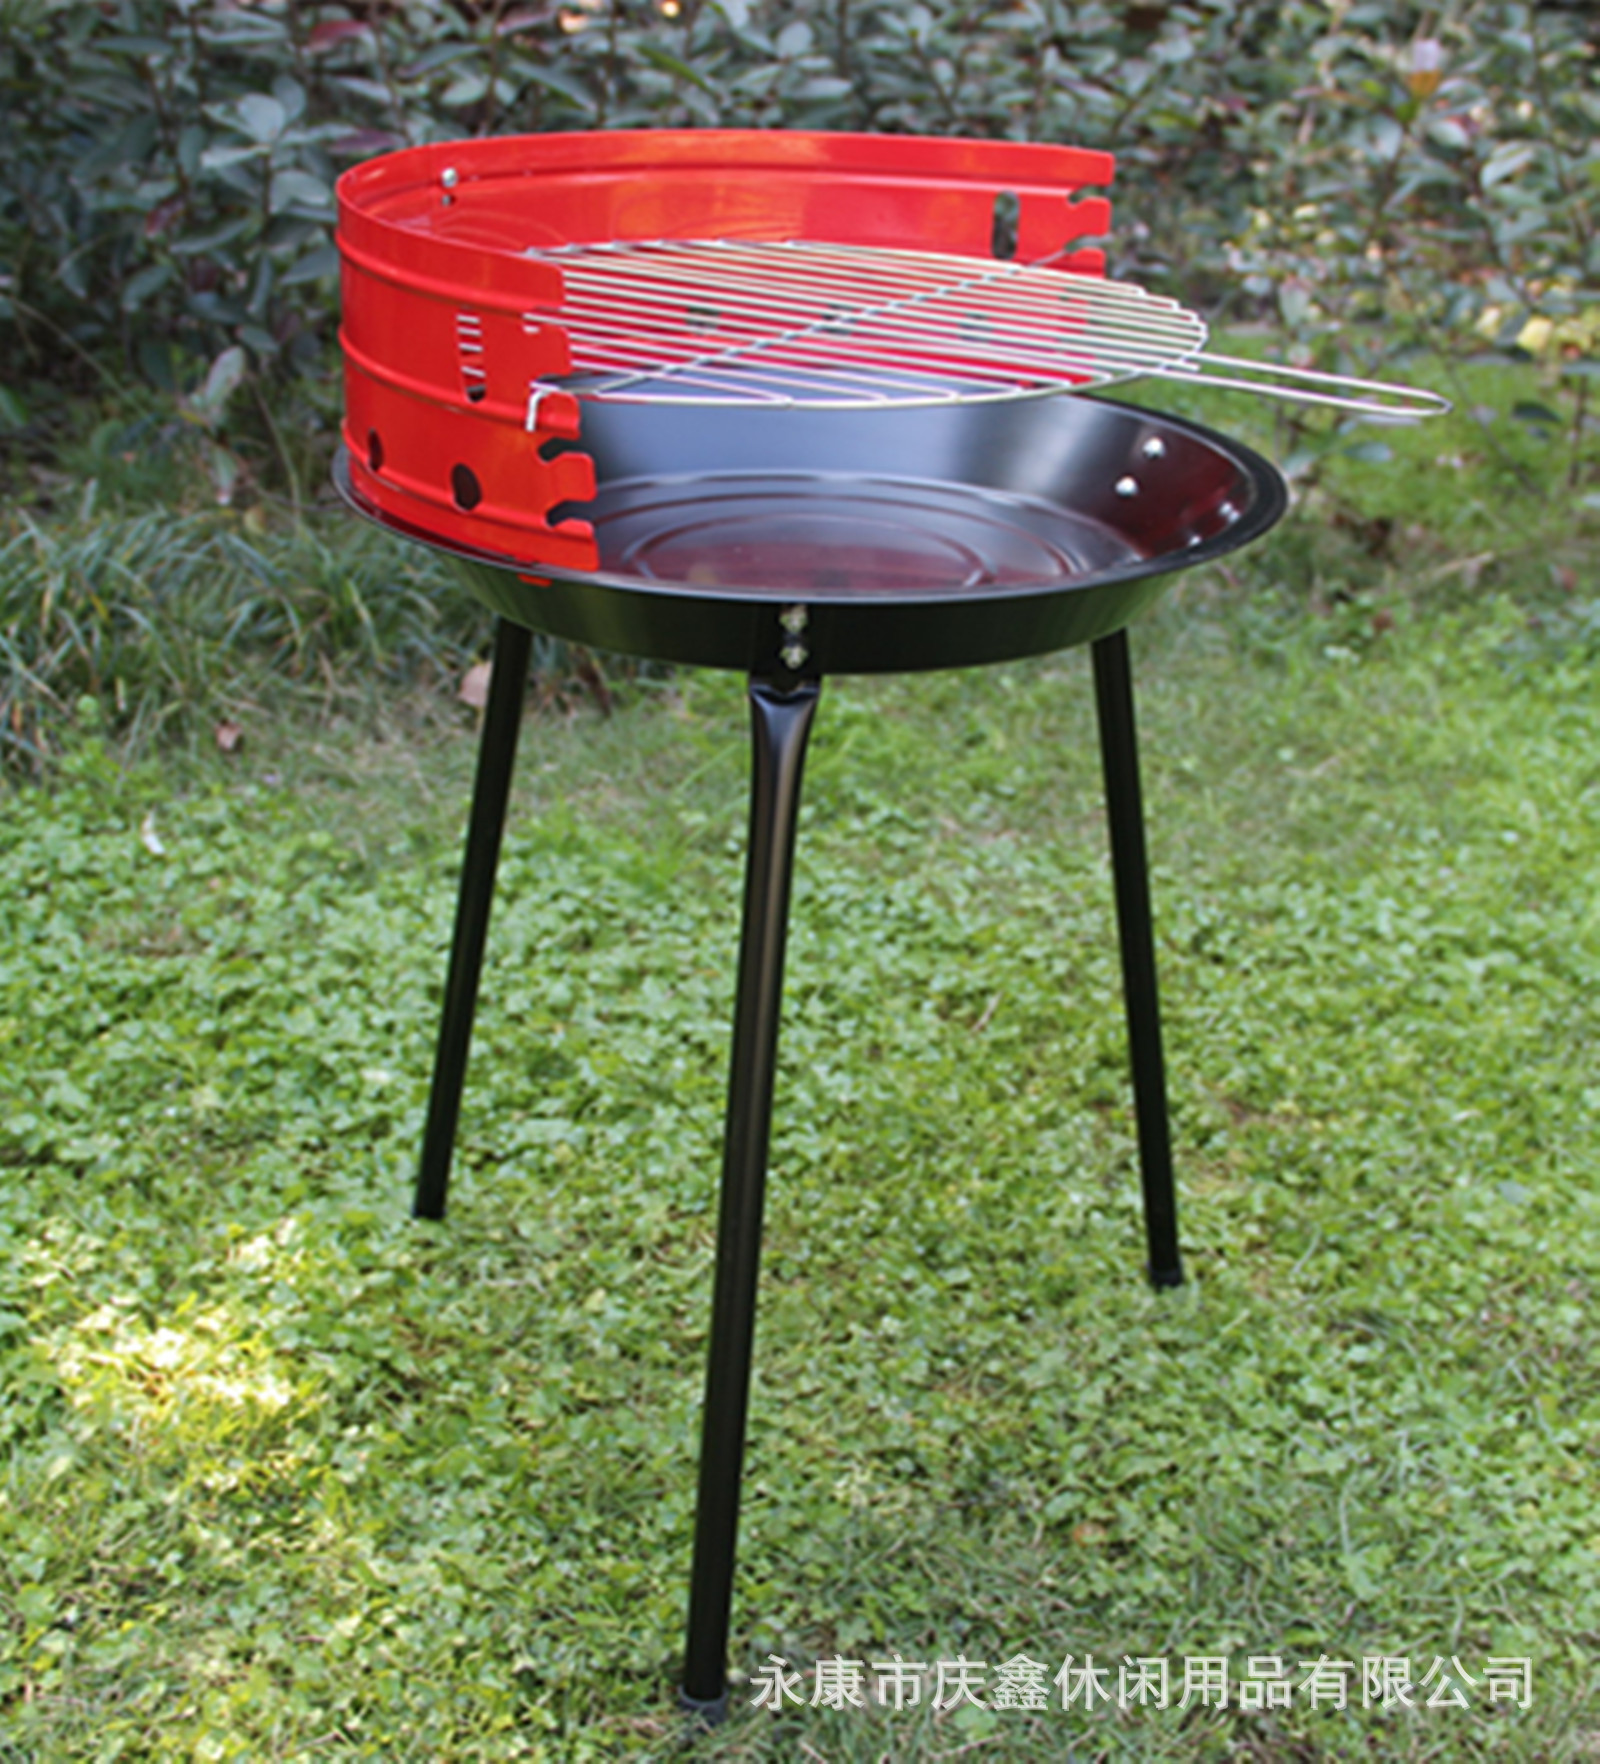 户外不锈钢烧烤架3-4人 便携式烧烤炉可折叠 旅行野餐烧烤架 烤炉-阿里巴巴